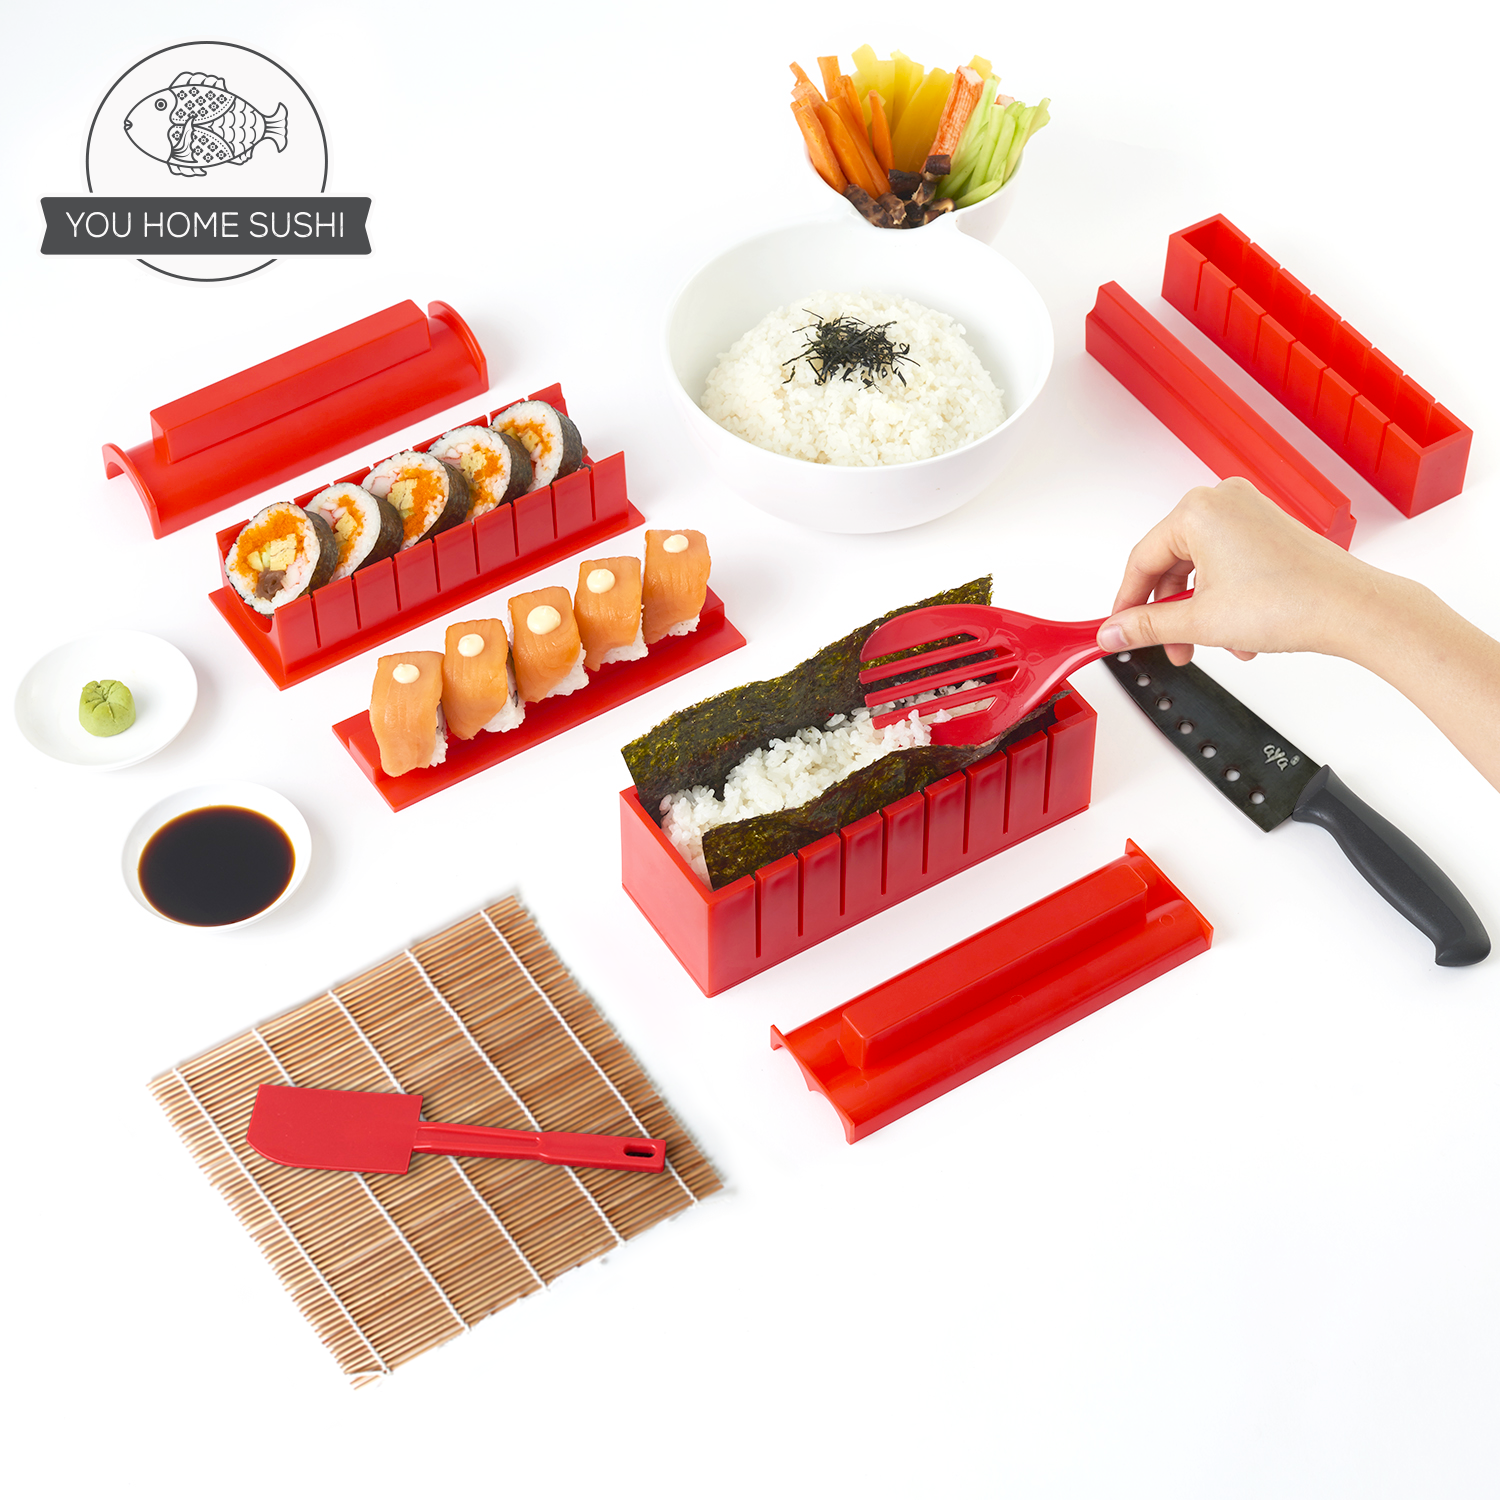 AYA Sushi Maker 2 – AYA Sushi, KROM LTD LLC